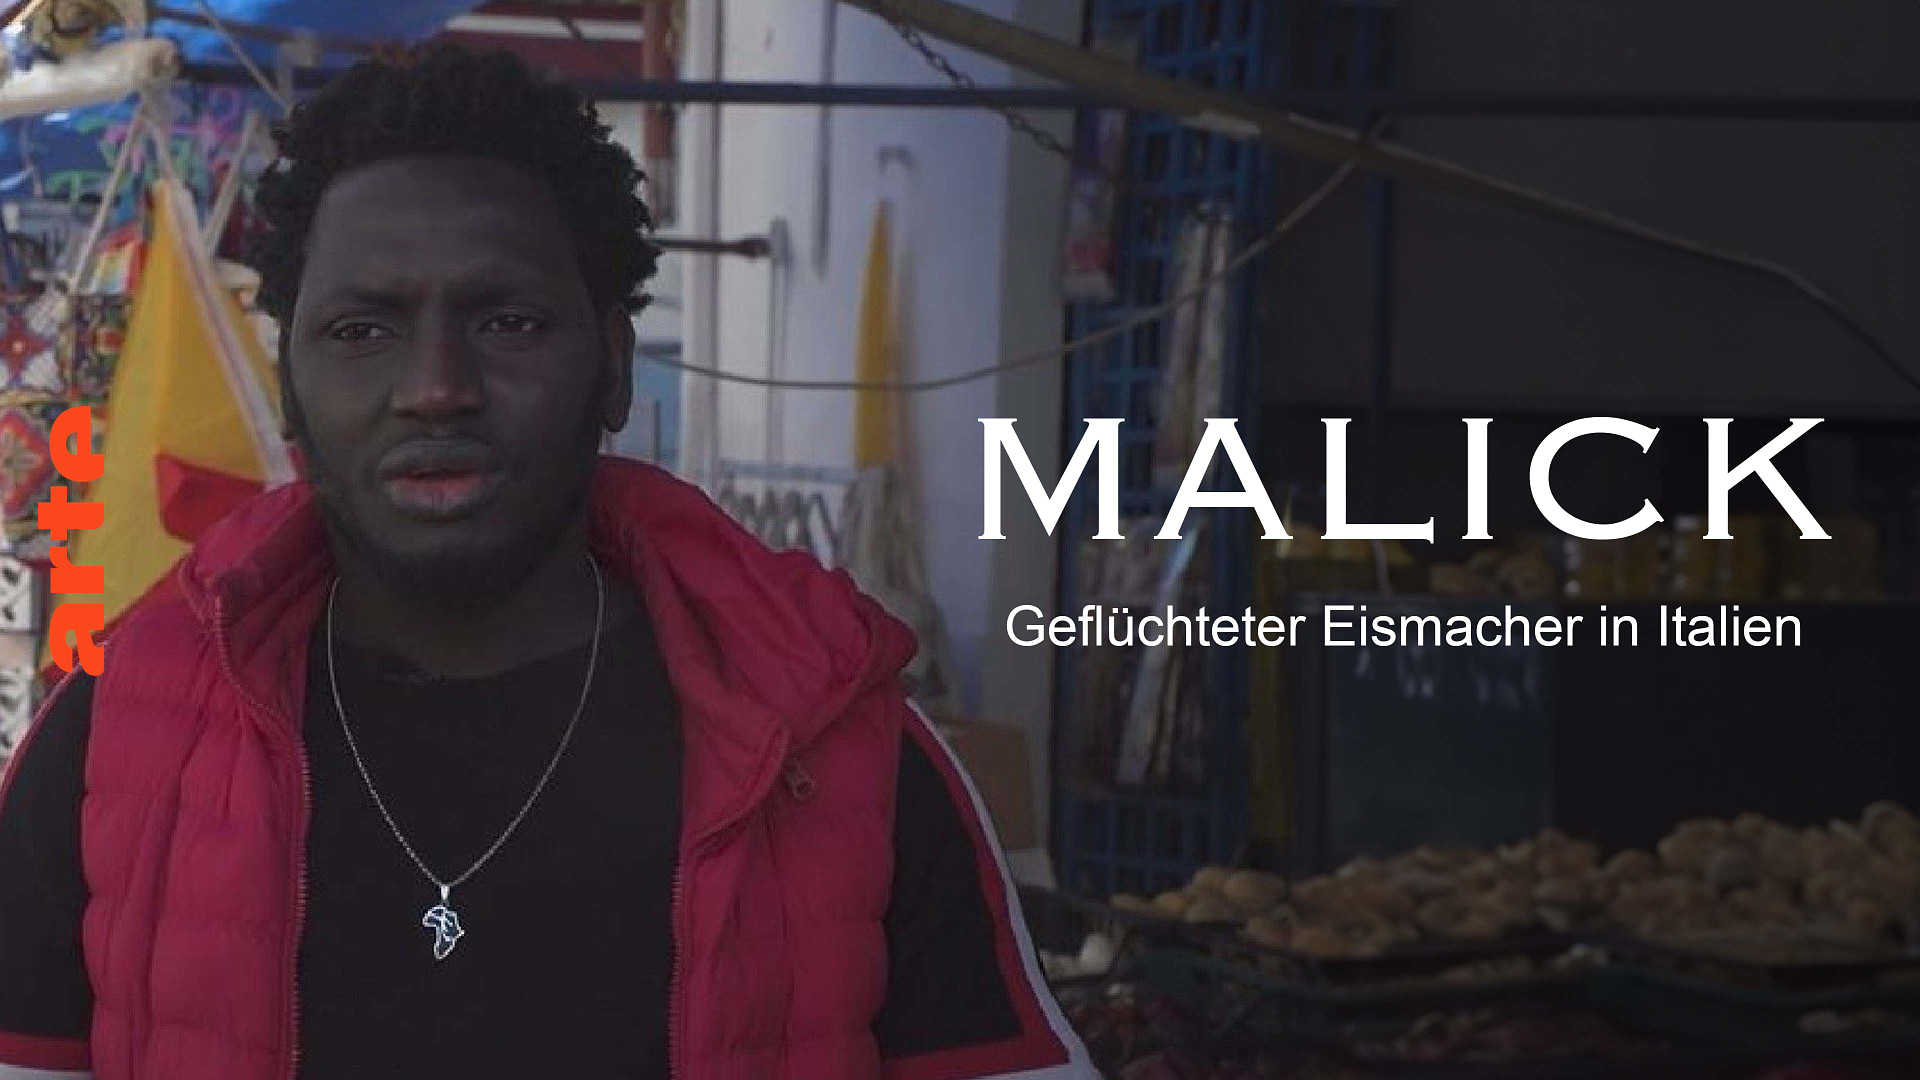 Malick, geflüchteter Eismacher in Italien